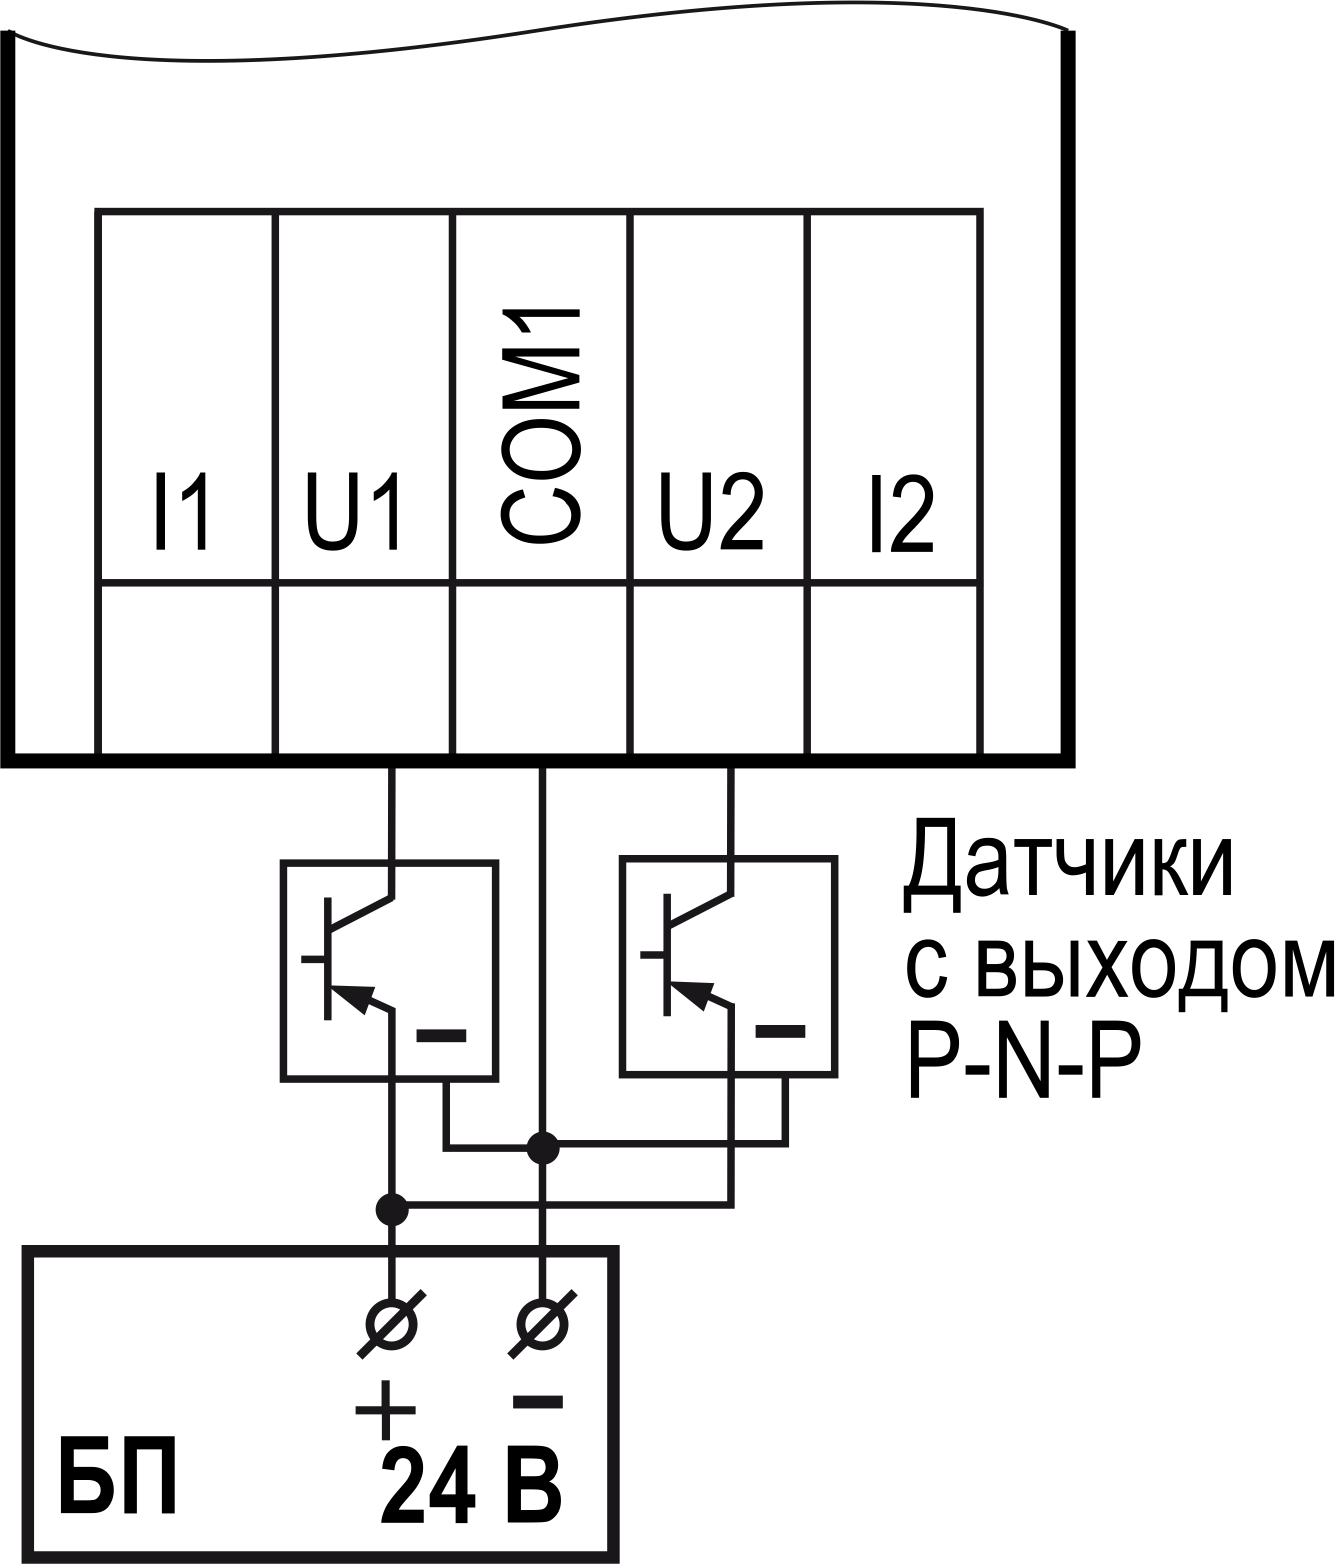 Схема подключения к универсальным входам, работающим в дискретном режиме, трехпроводных дискретных датчиков, имеющих выходной транзистор p-n-p-типа с открытым коллектором